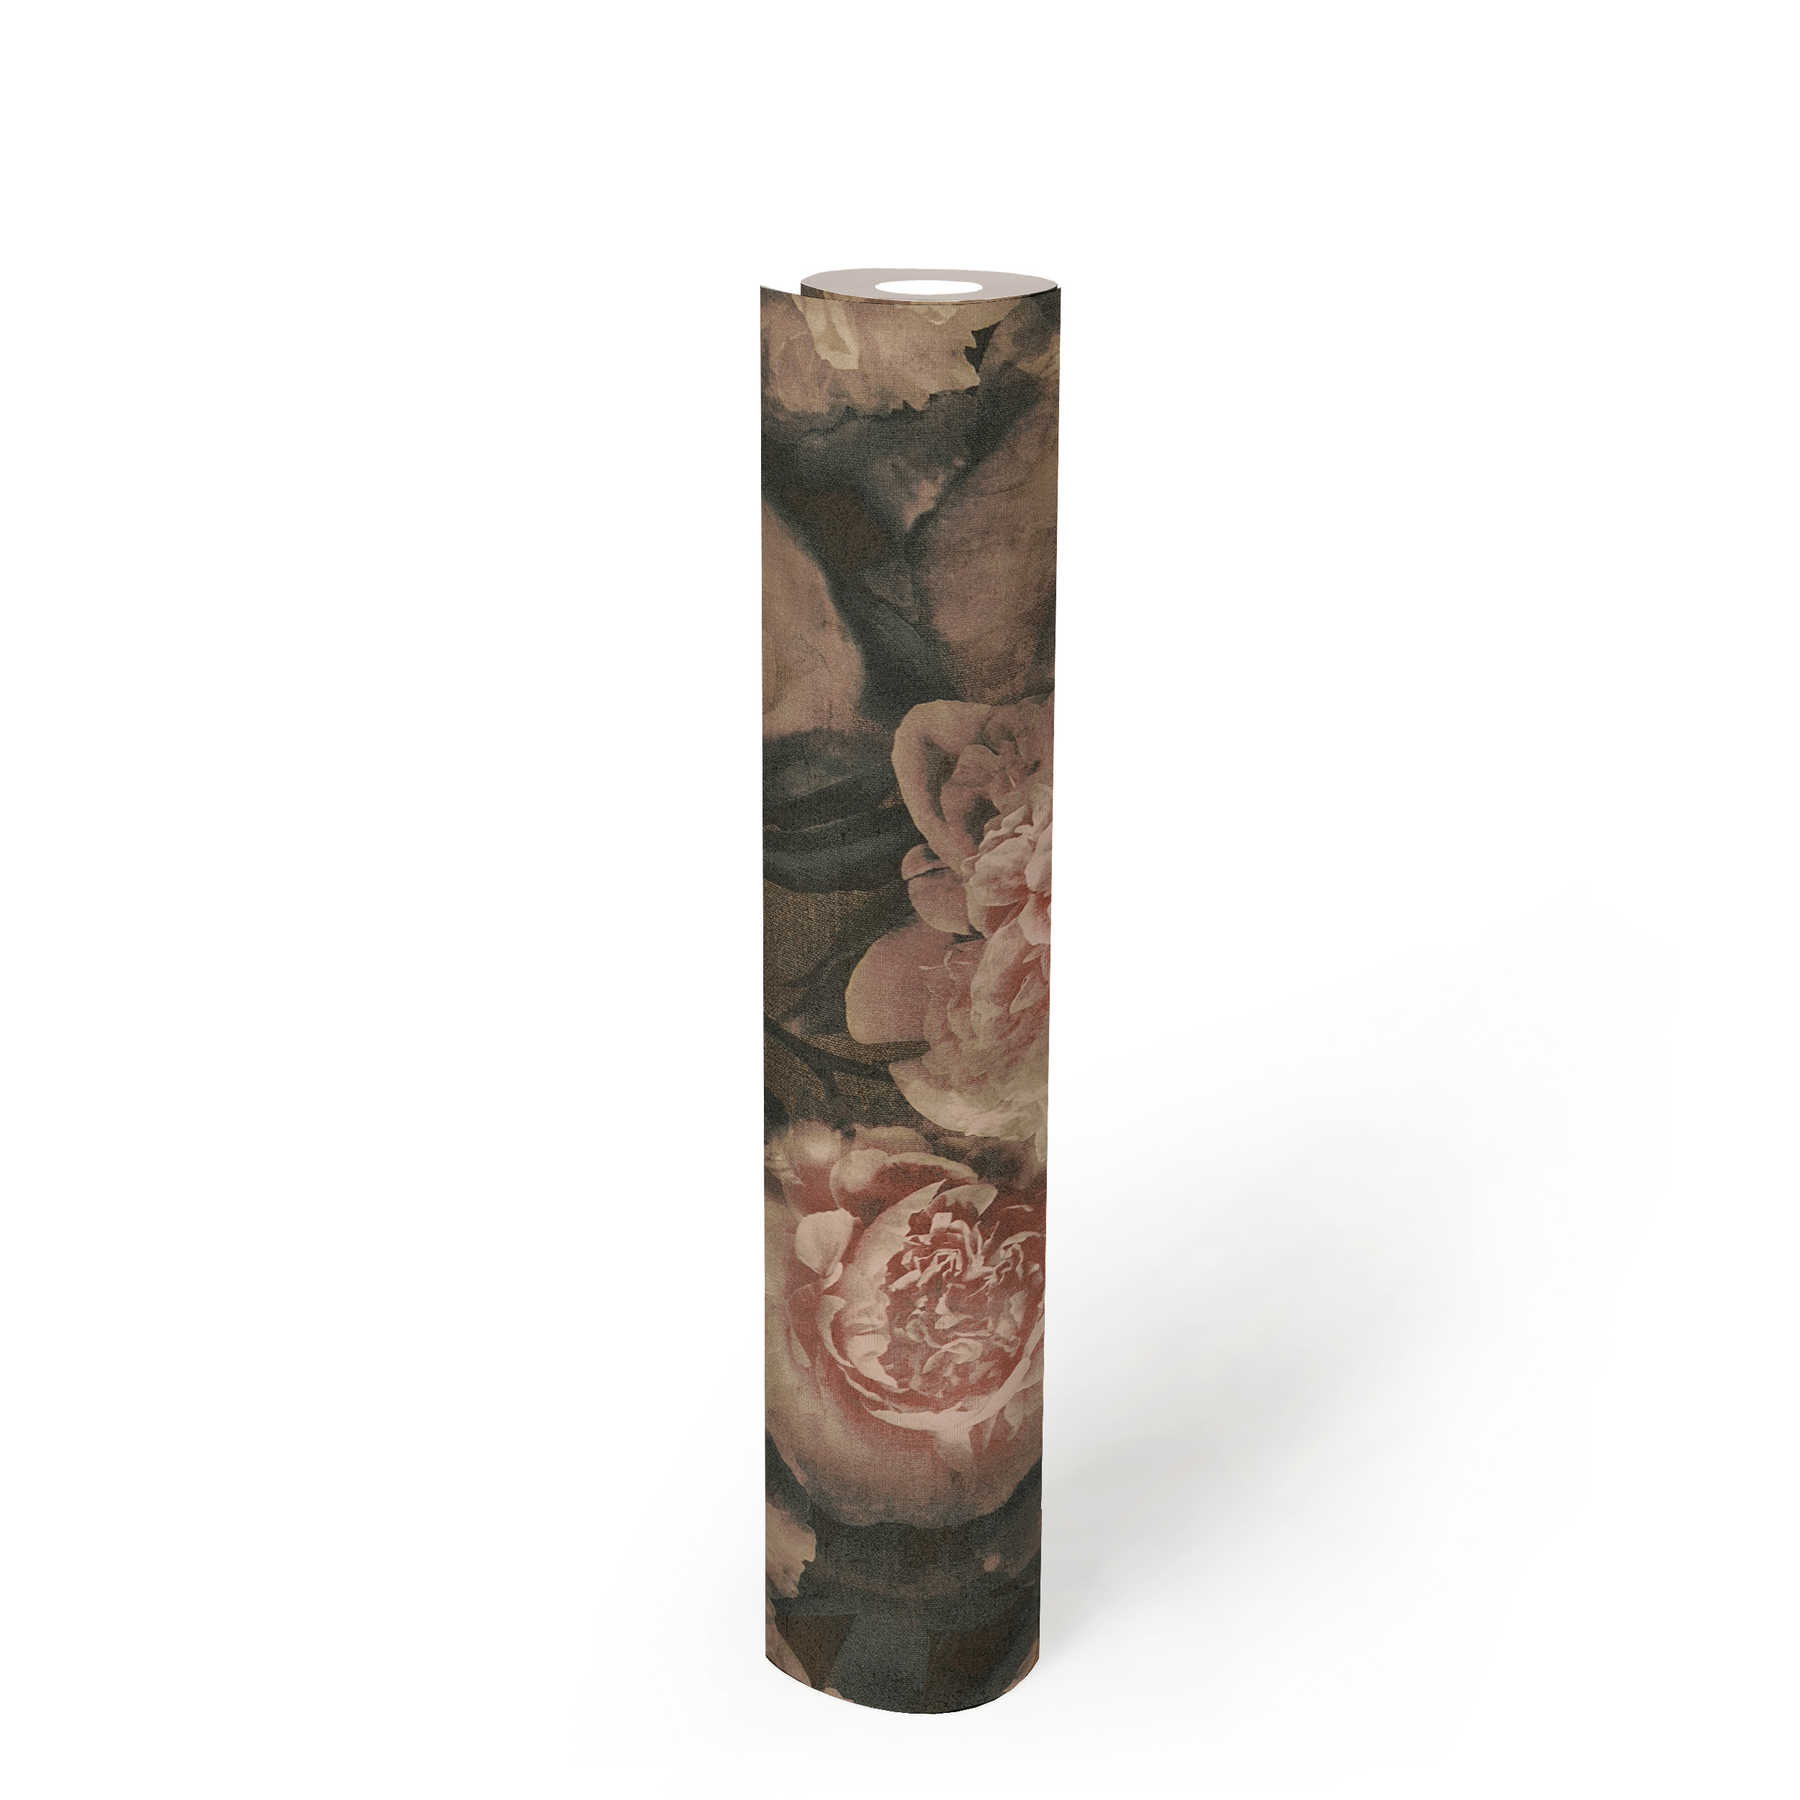             Blumentapete Rosen im Vintage Look – Rosa, Rot, Schwarz
        